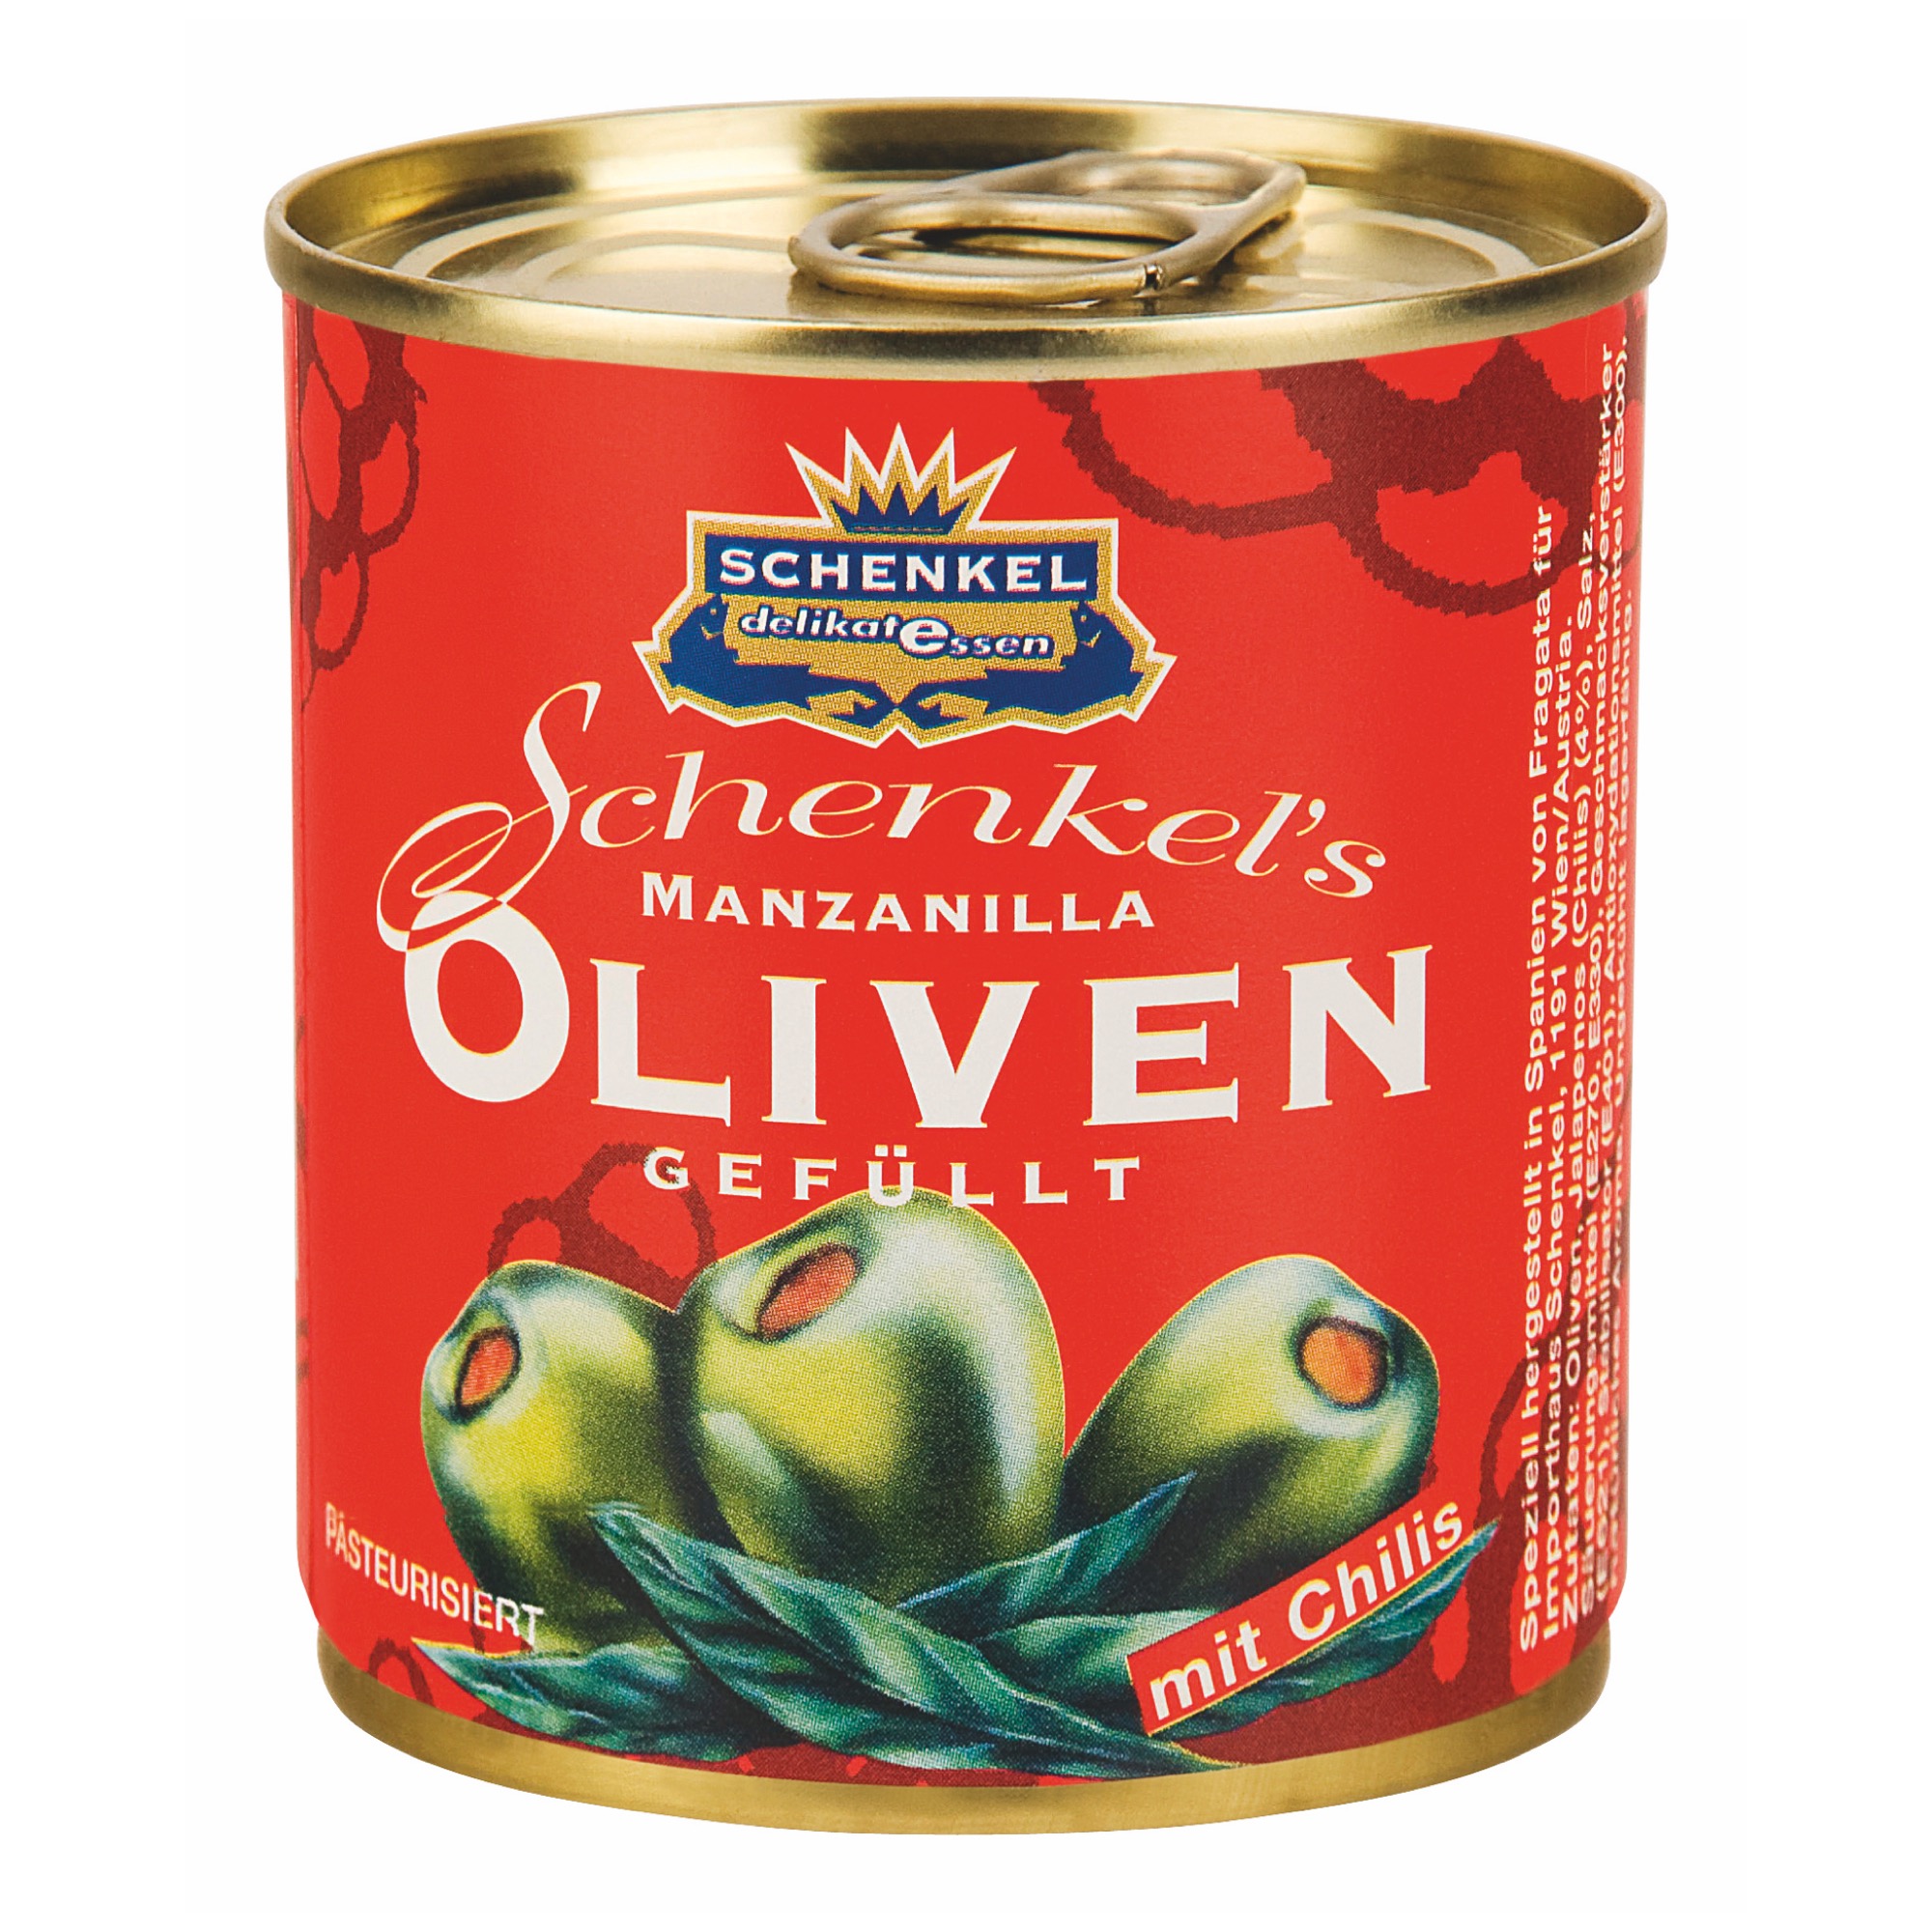 Schenkel olivy 200g s čili